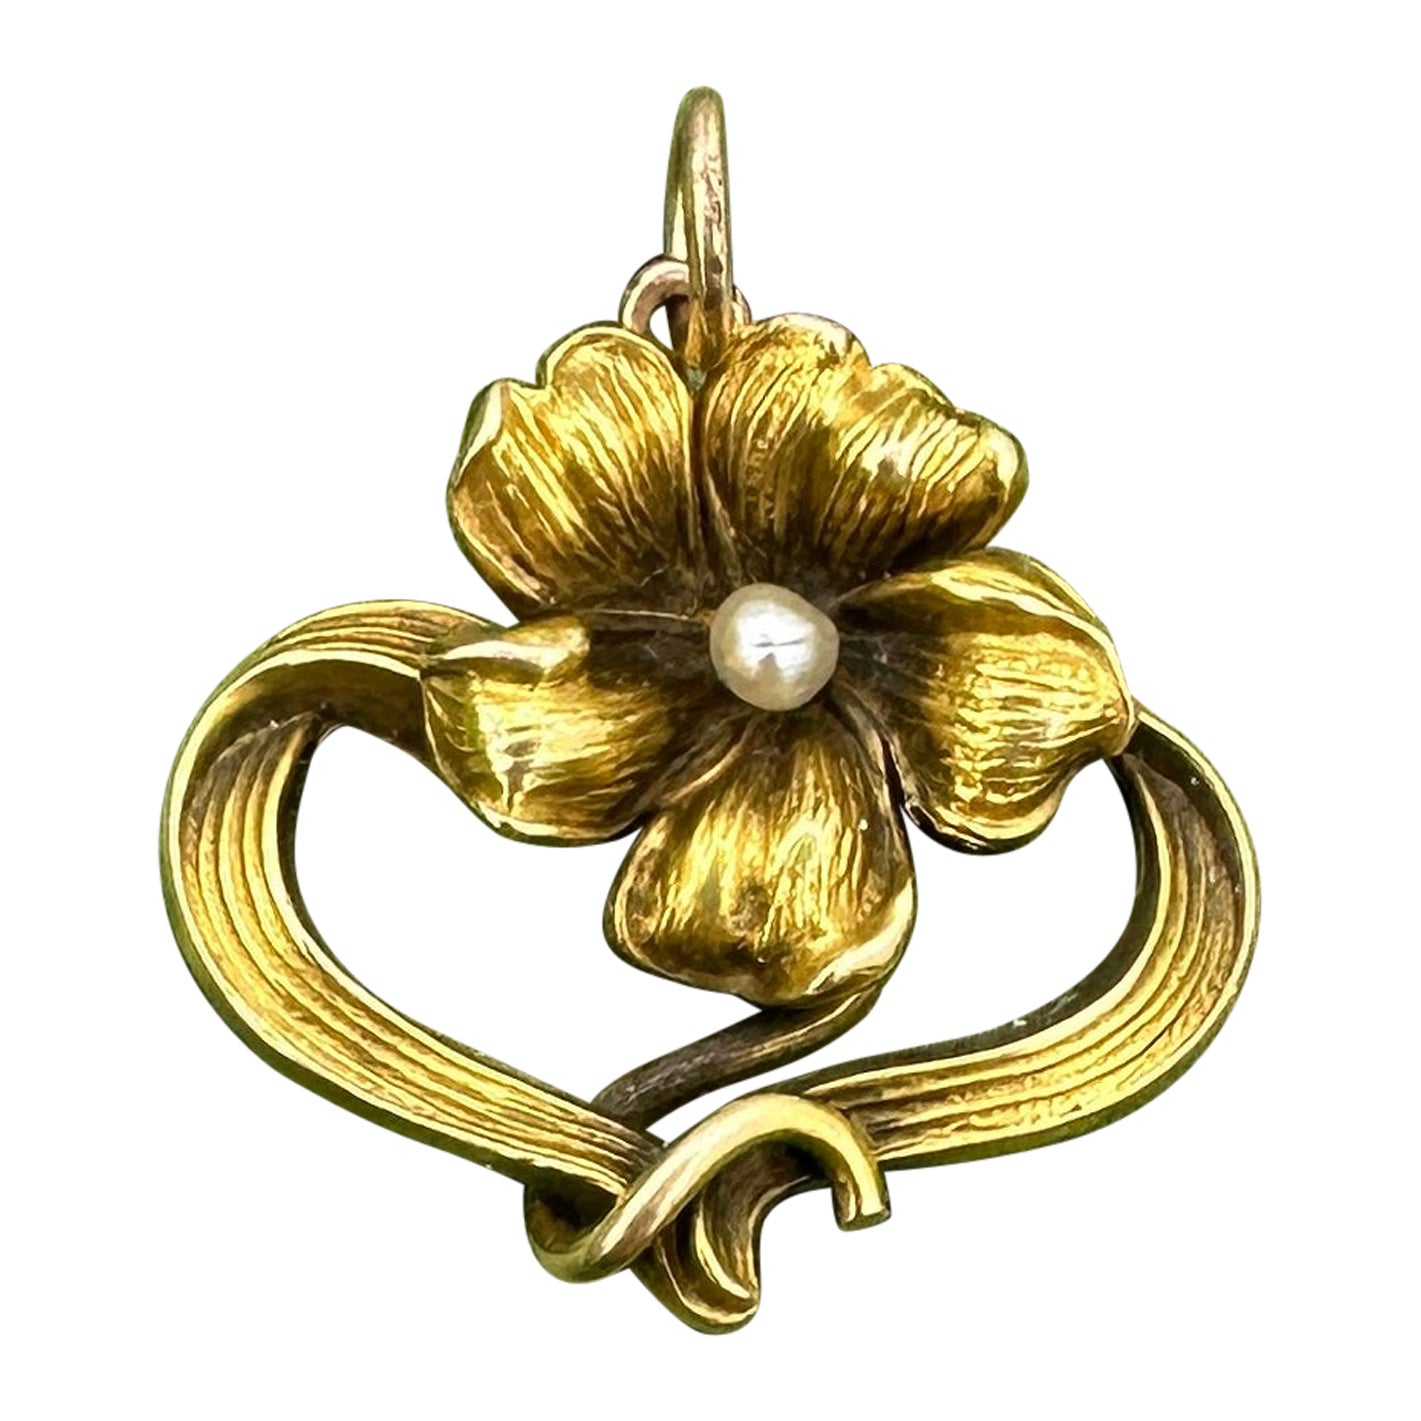 Art Nouveau Flower Pearl Pendant Necklace Gold Antique